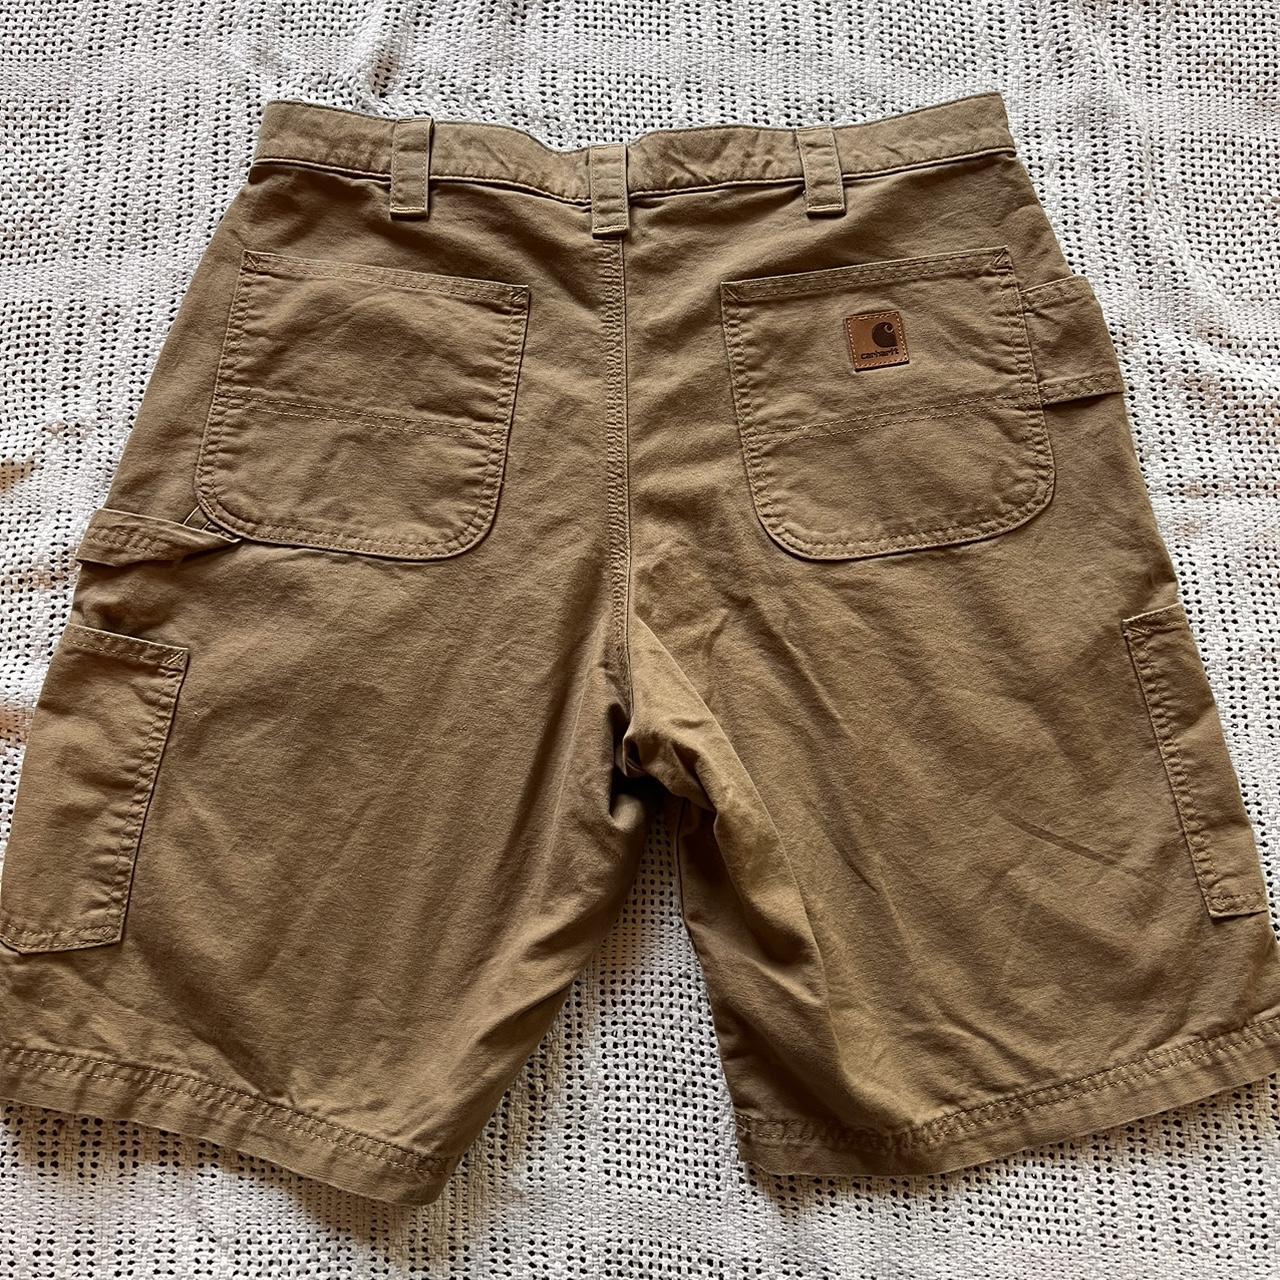 Carhartt shorts Waist-36 #carhartt #streetwear #shorts - Depop